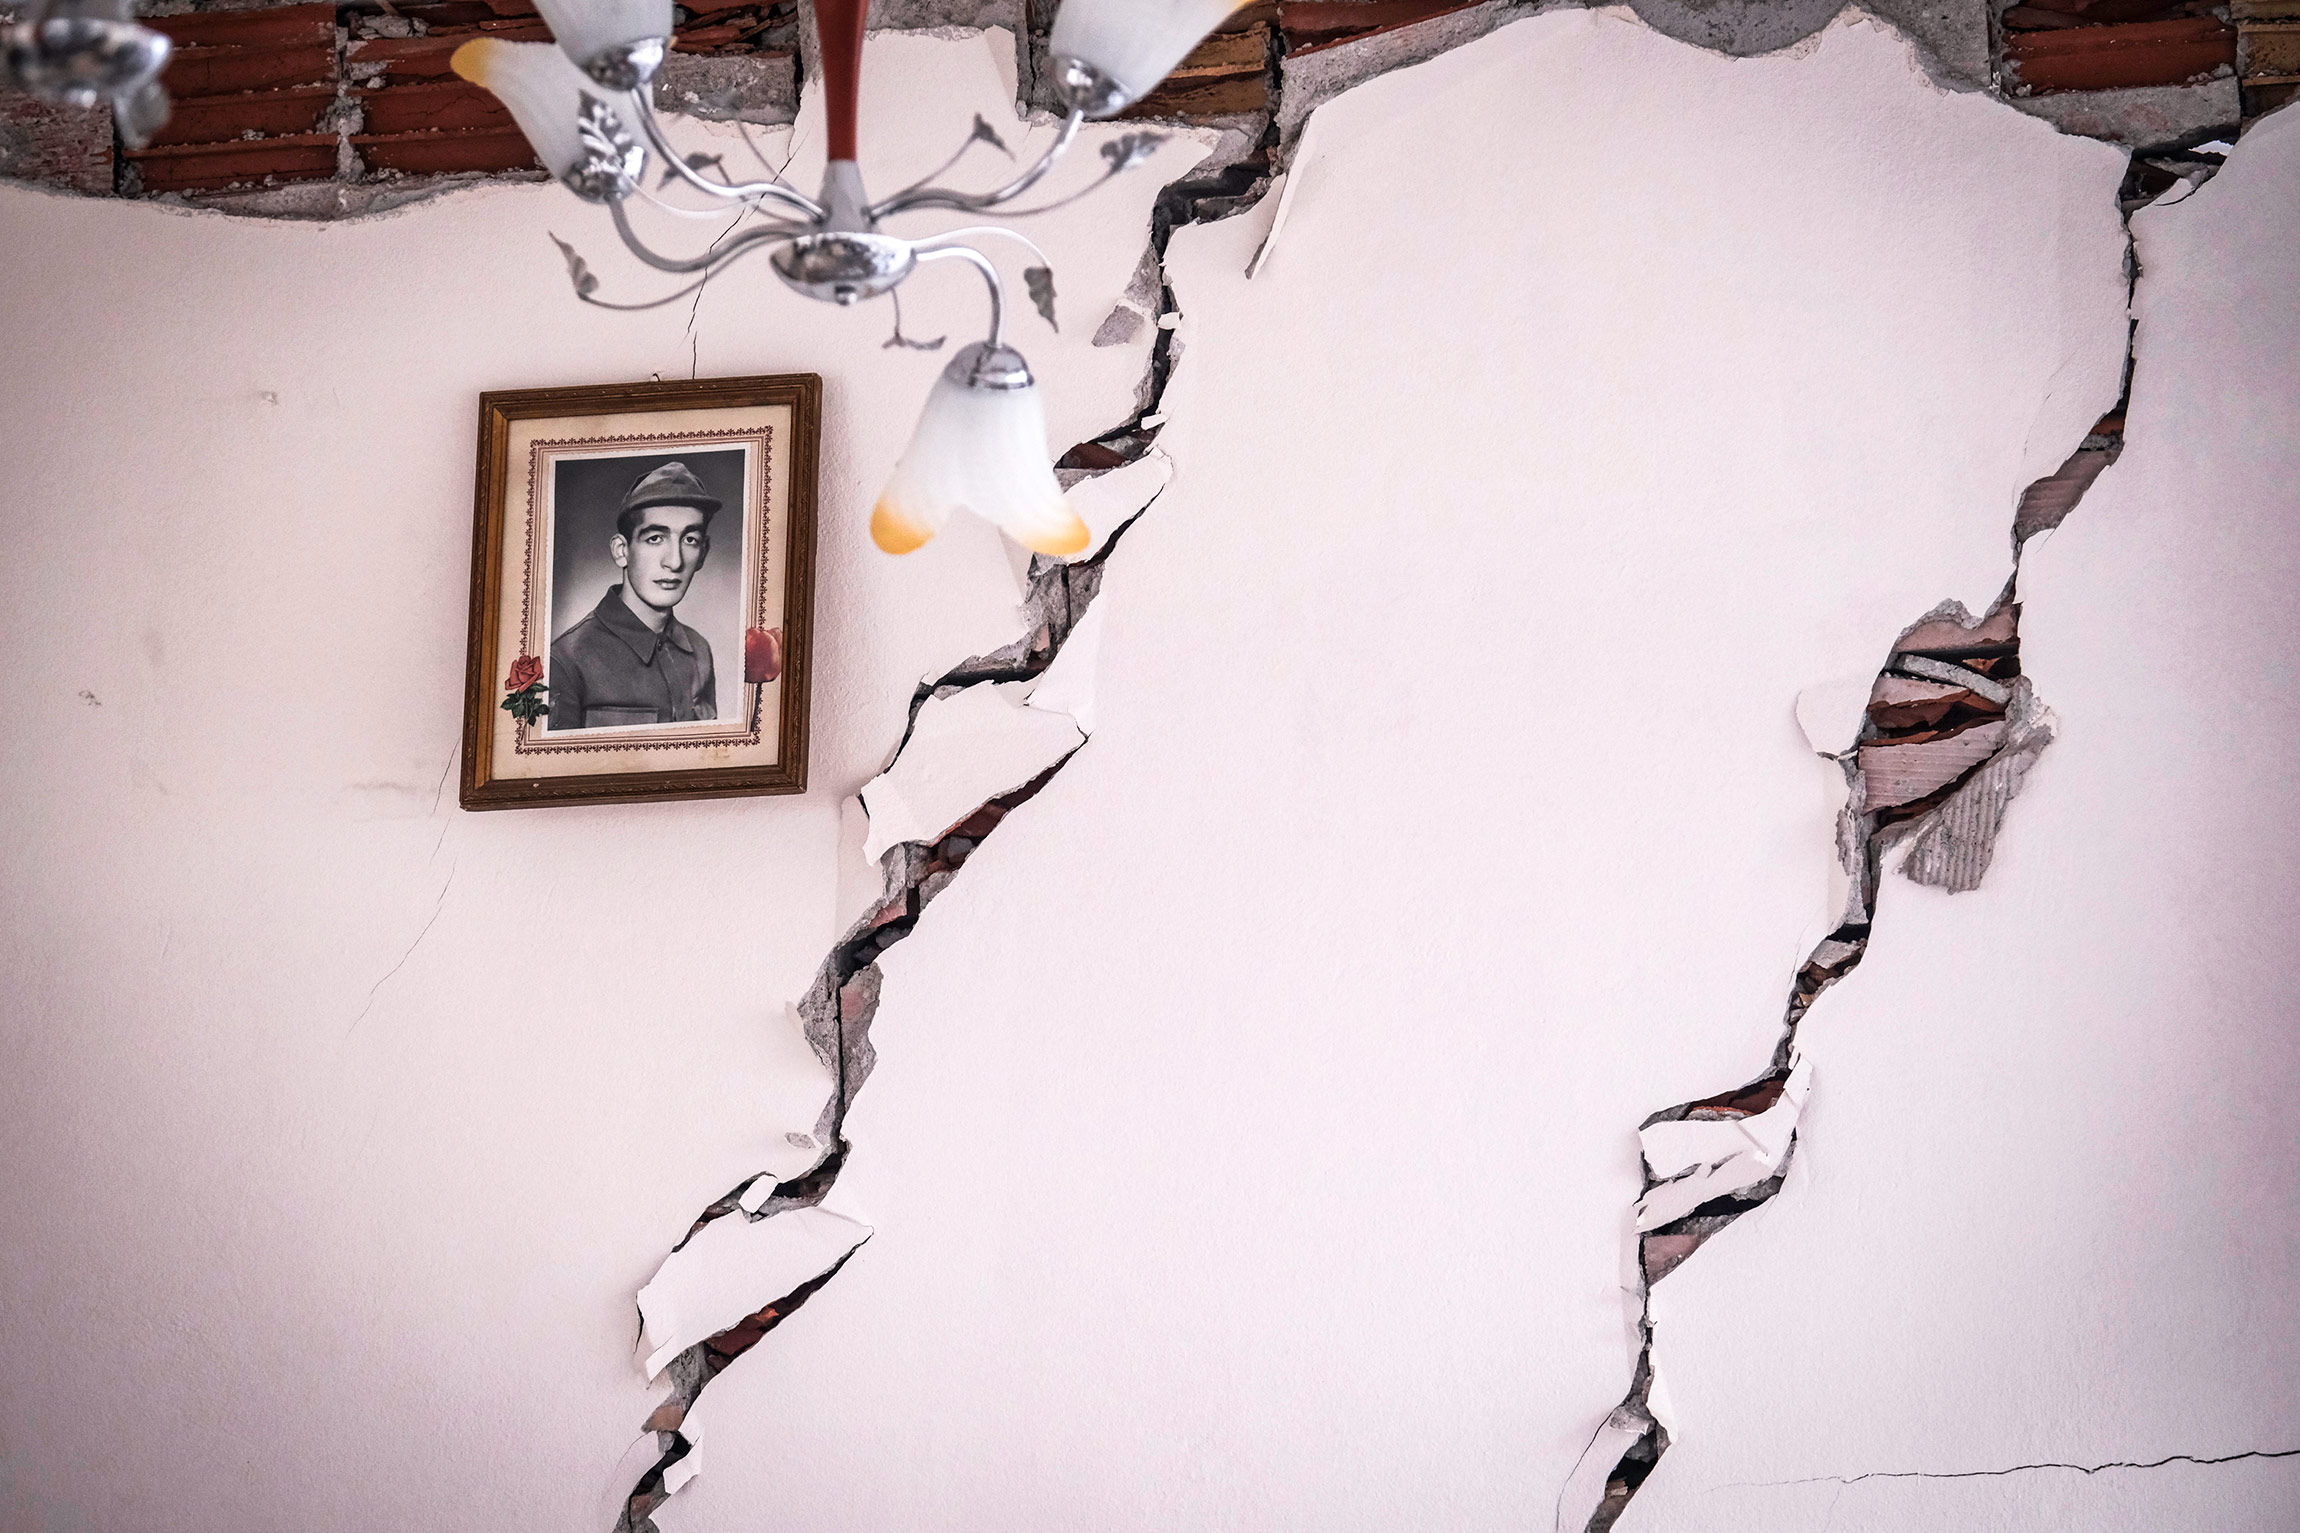 Портрет на стене рухнувшего здания в городе Эльбистан, 9 февраля 2023 года